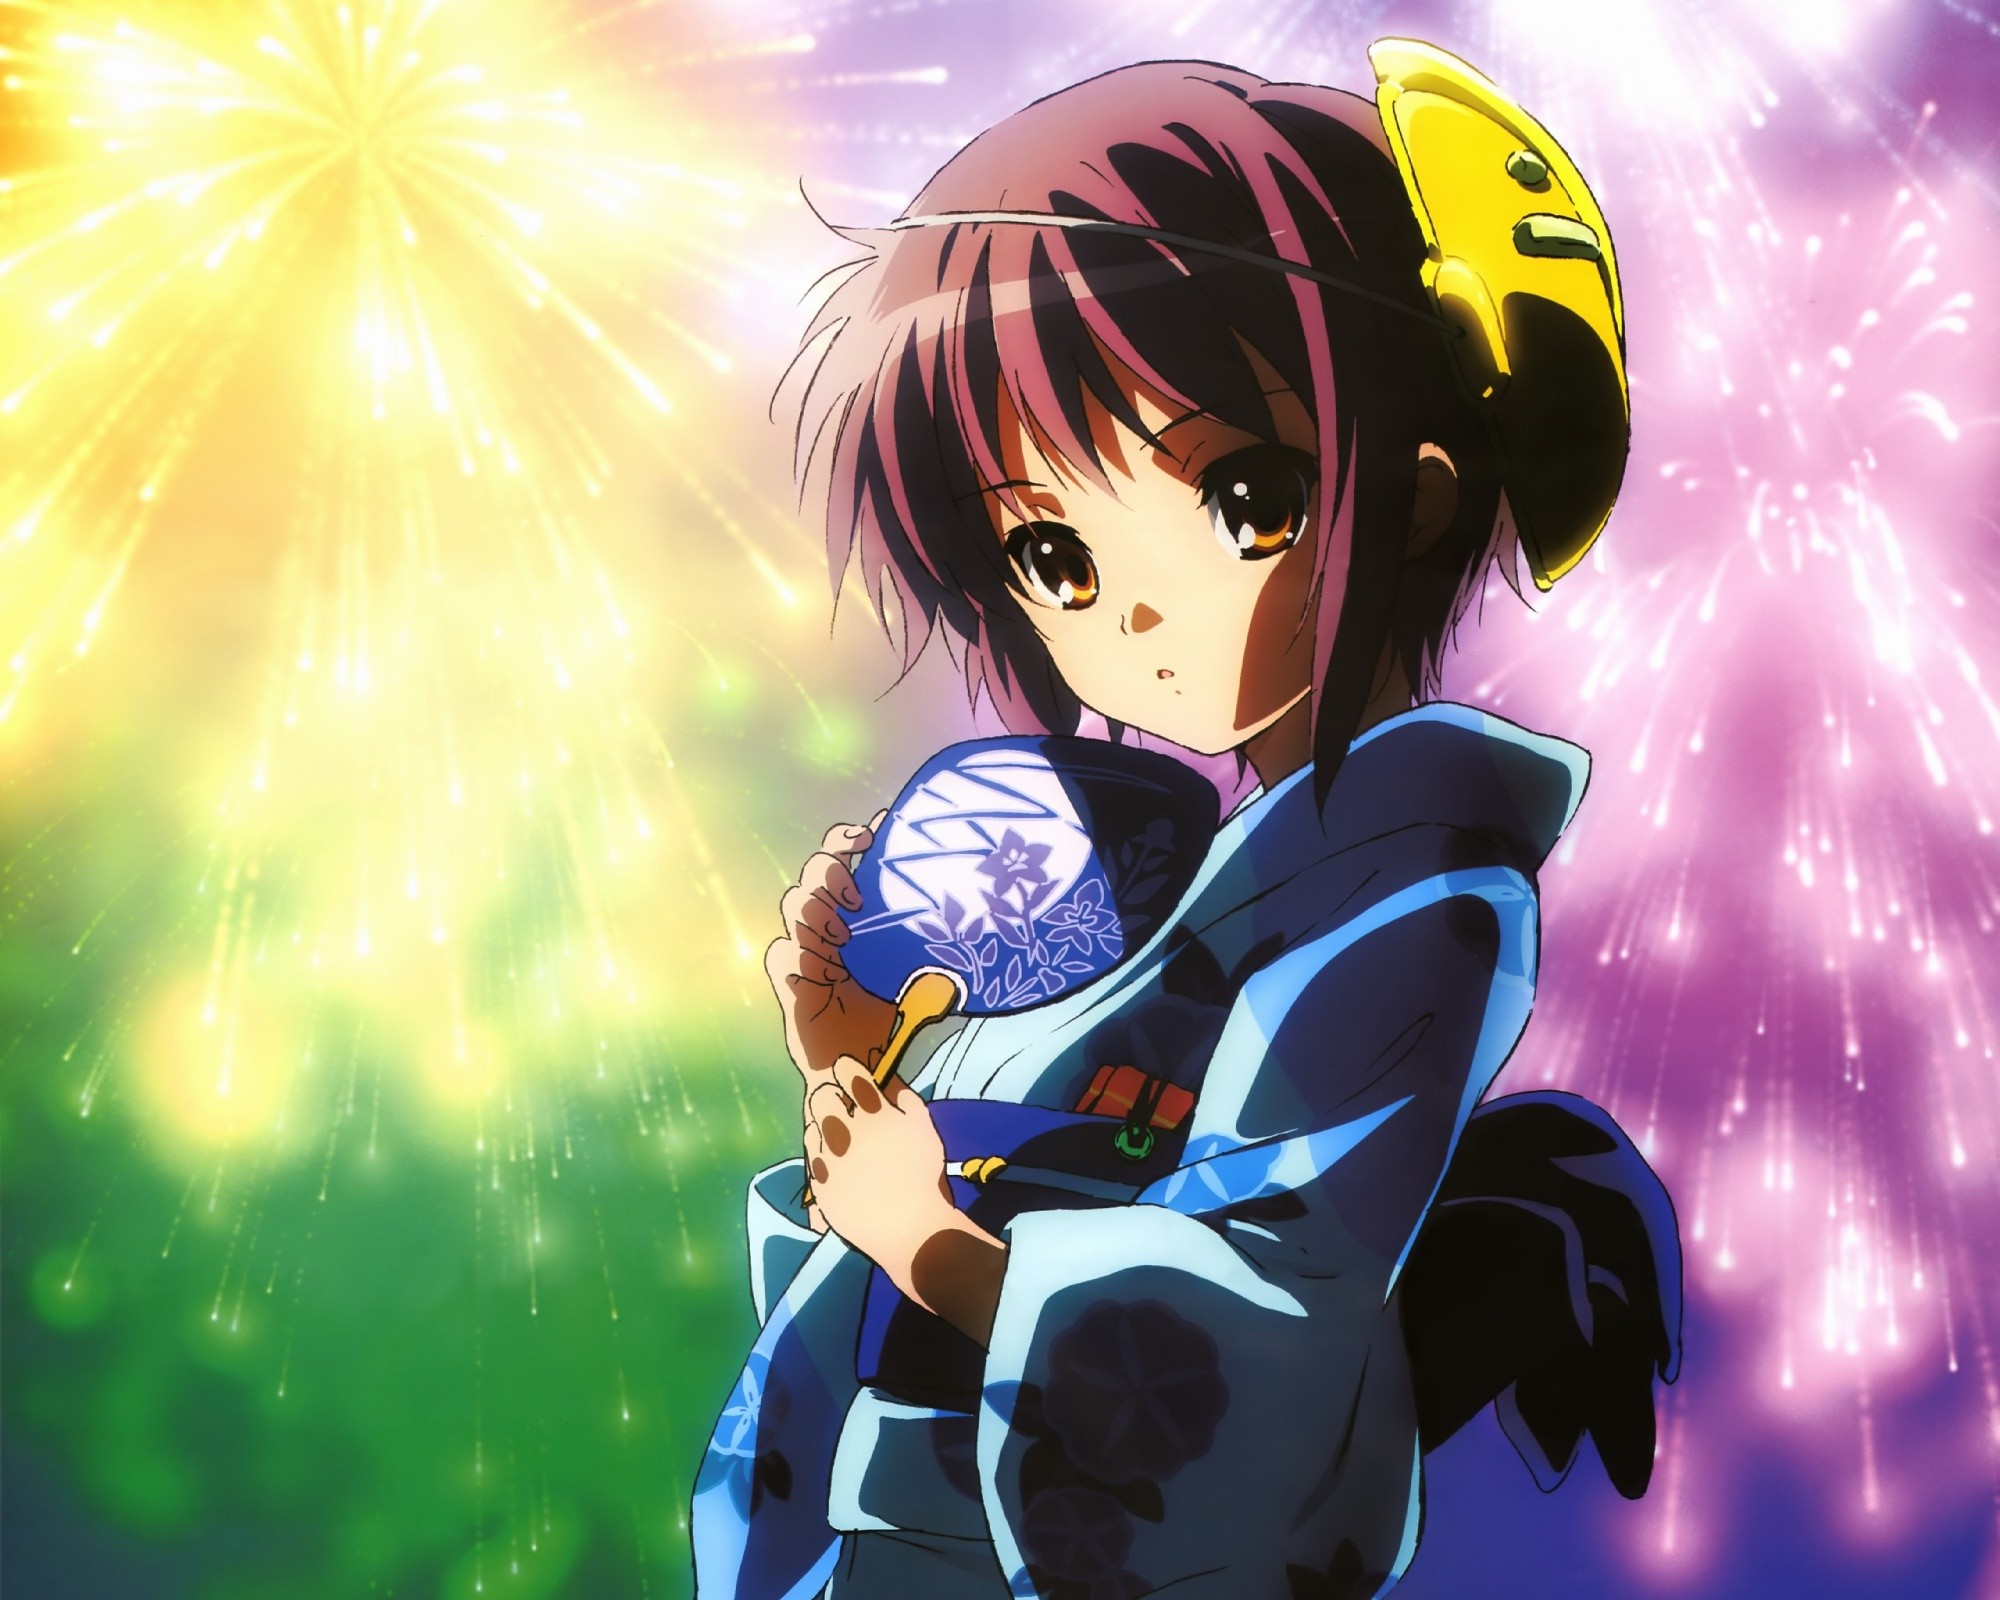 Anime 2000x1600 anime The Melancholy of Haruhi Suzumiya Nagato Yuki anime girls Japanese clothes fireworks